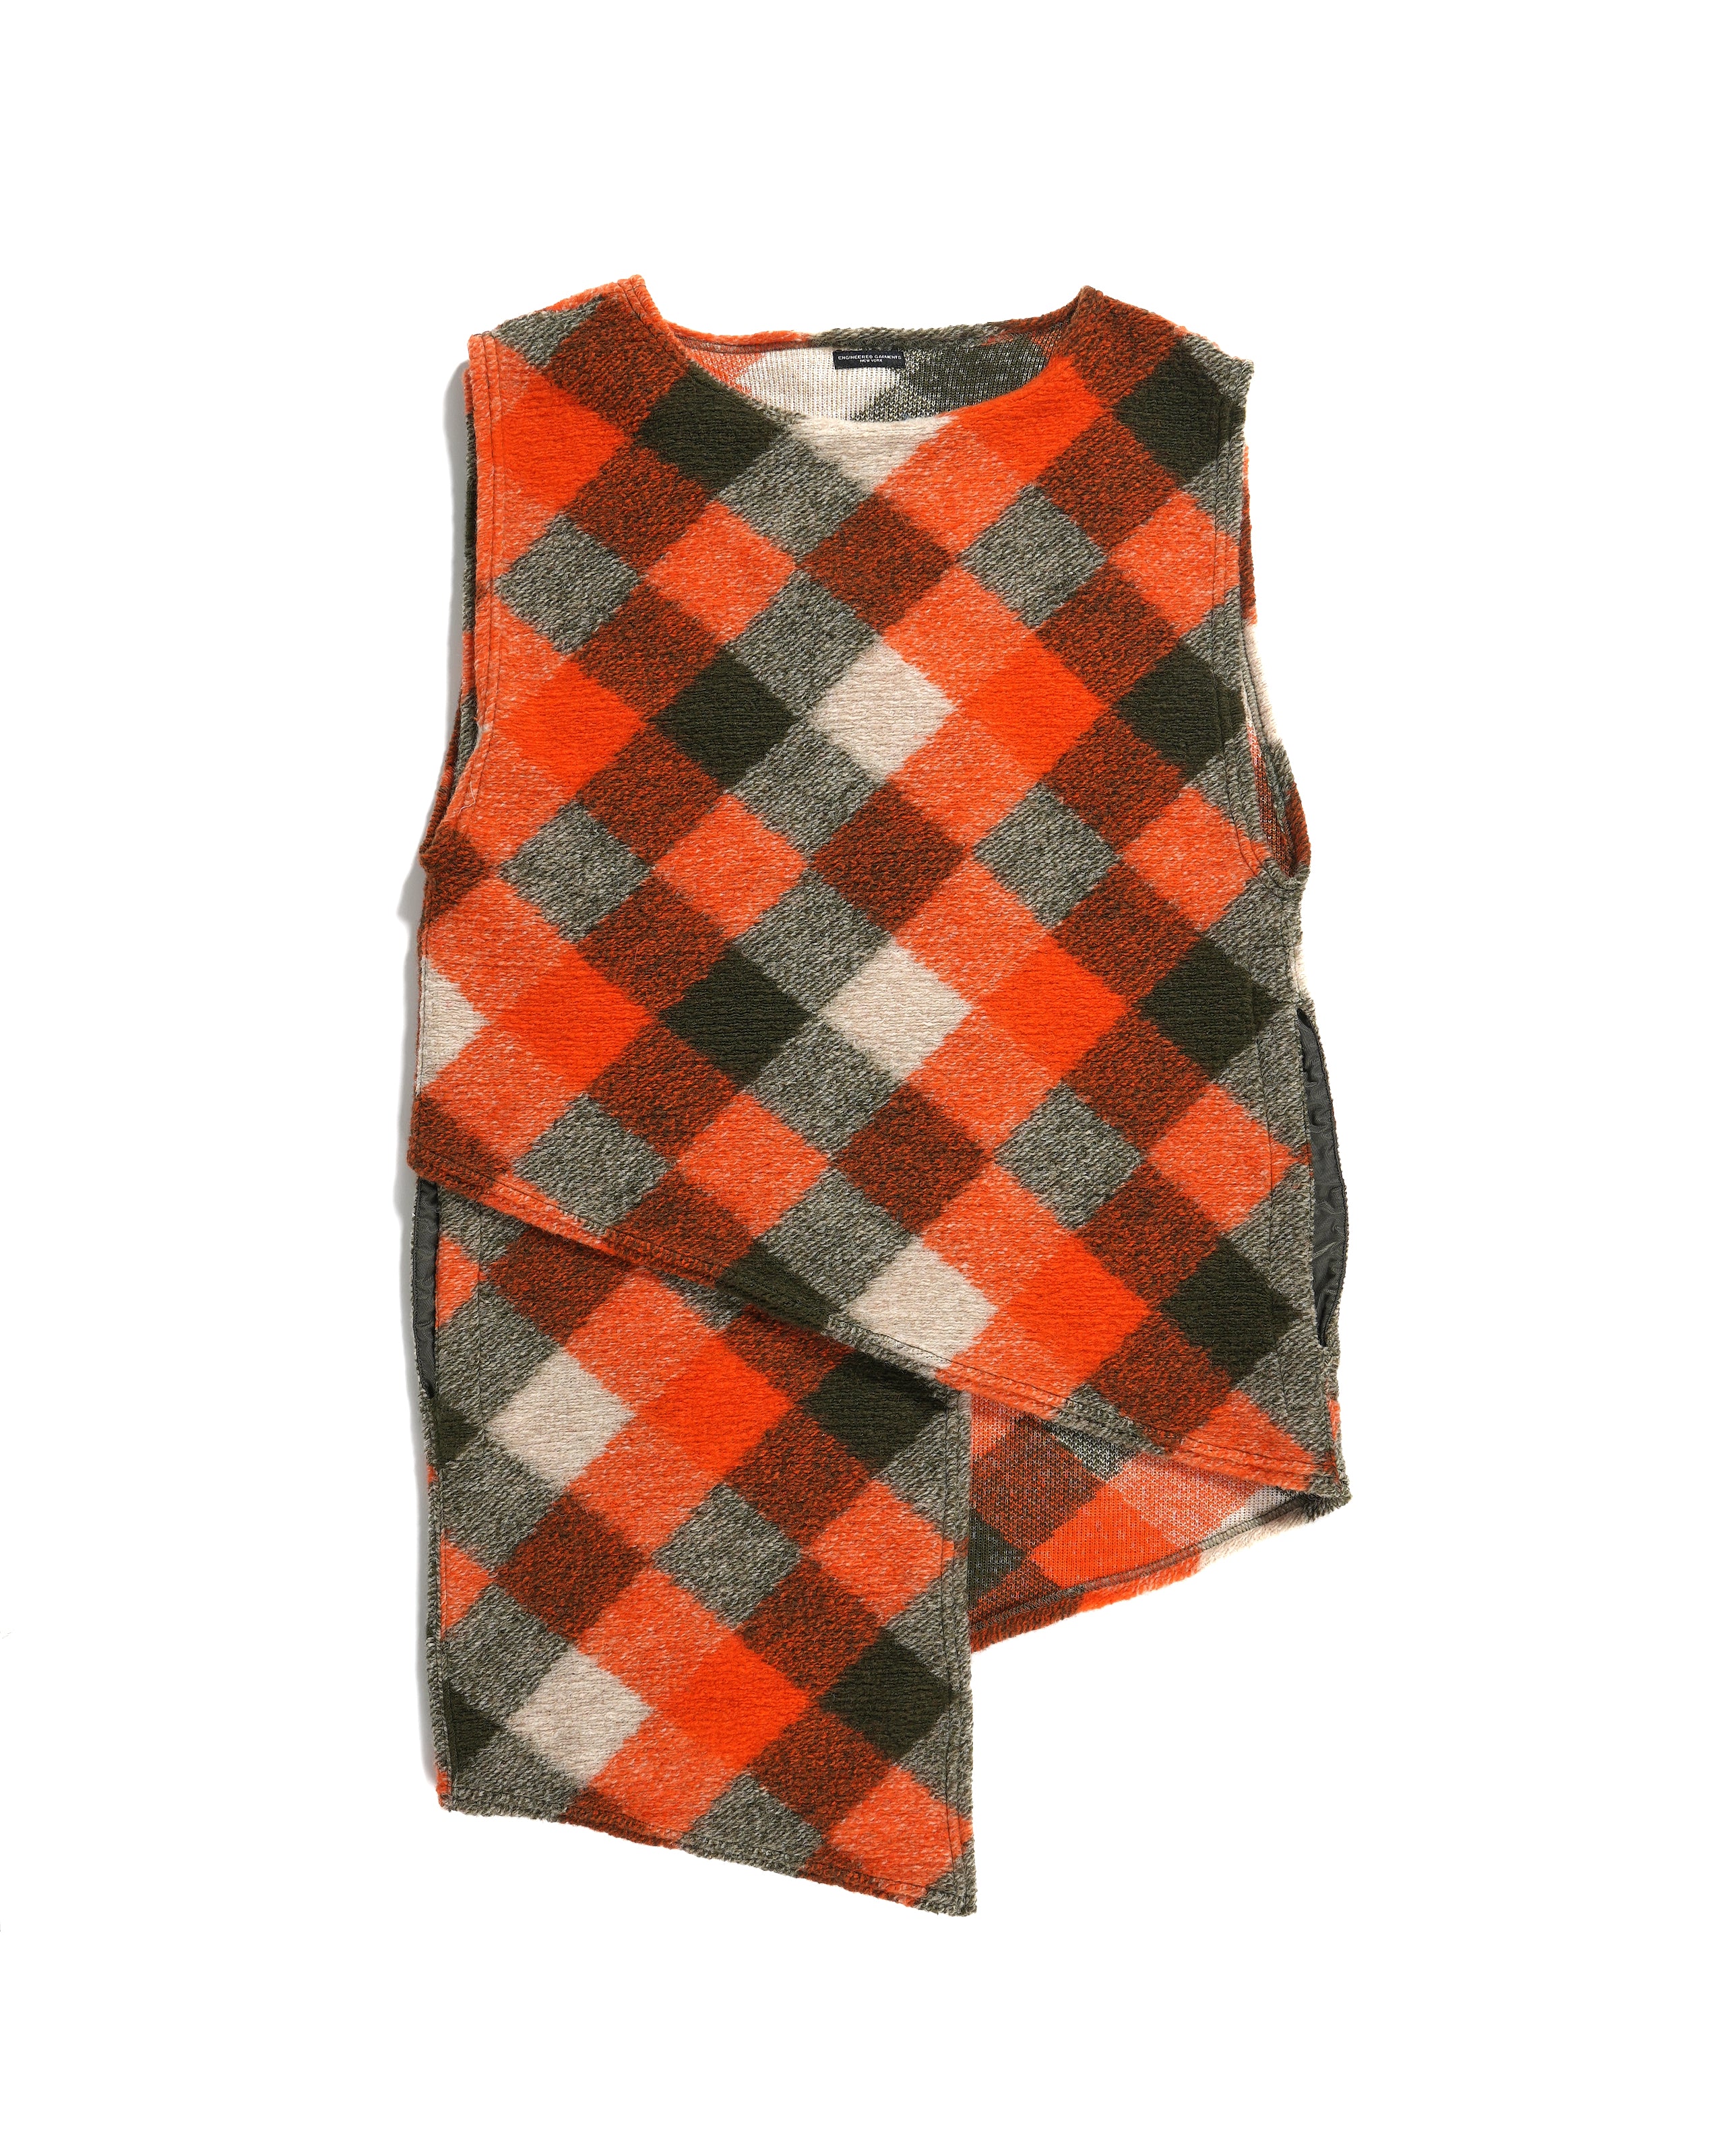 Wrap Knit Vest - Orange / Olive Poly Wool Diamond Knit